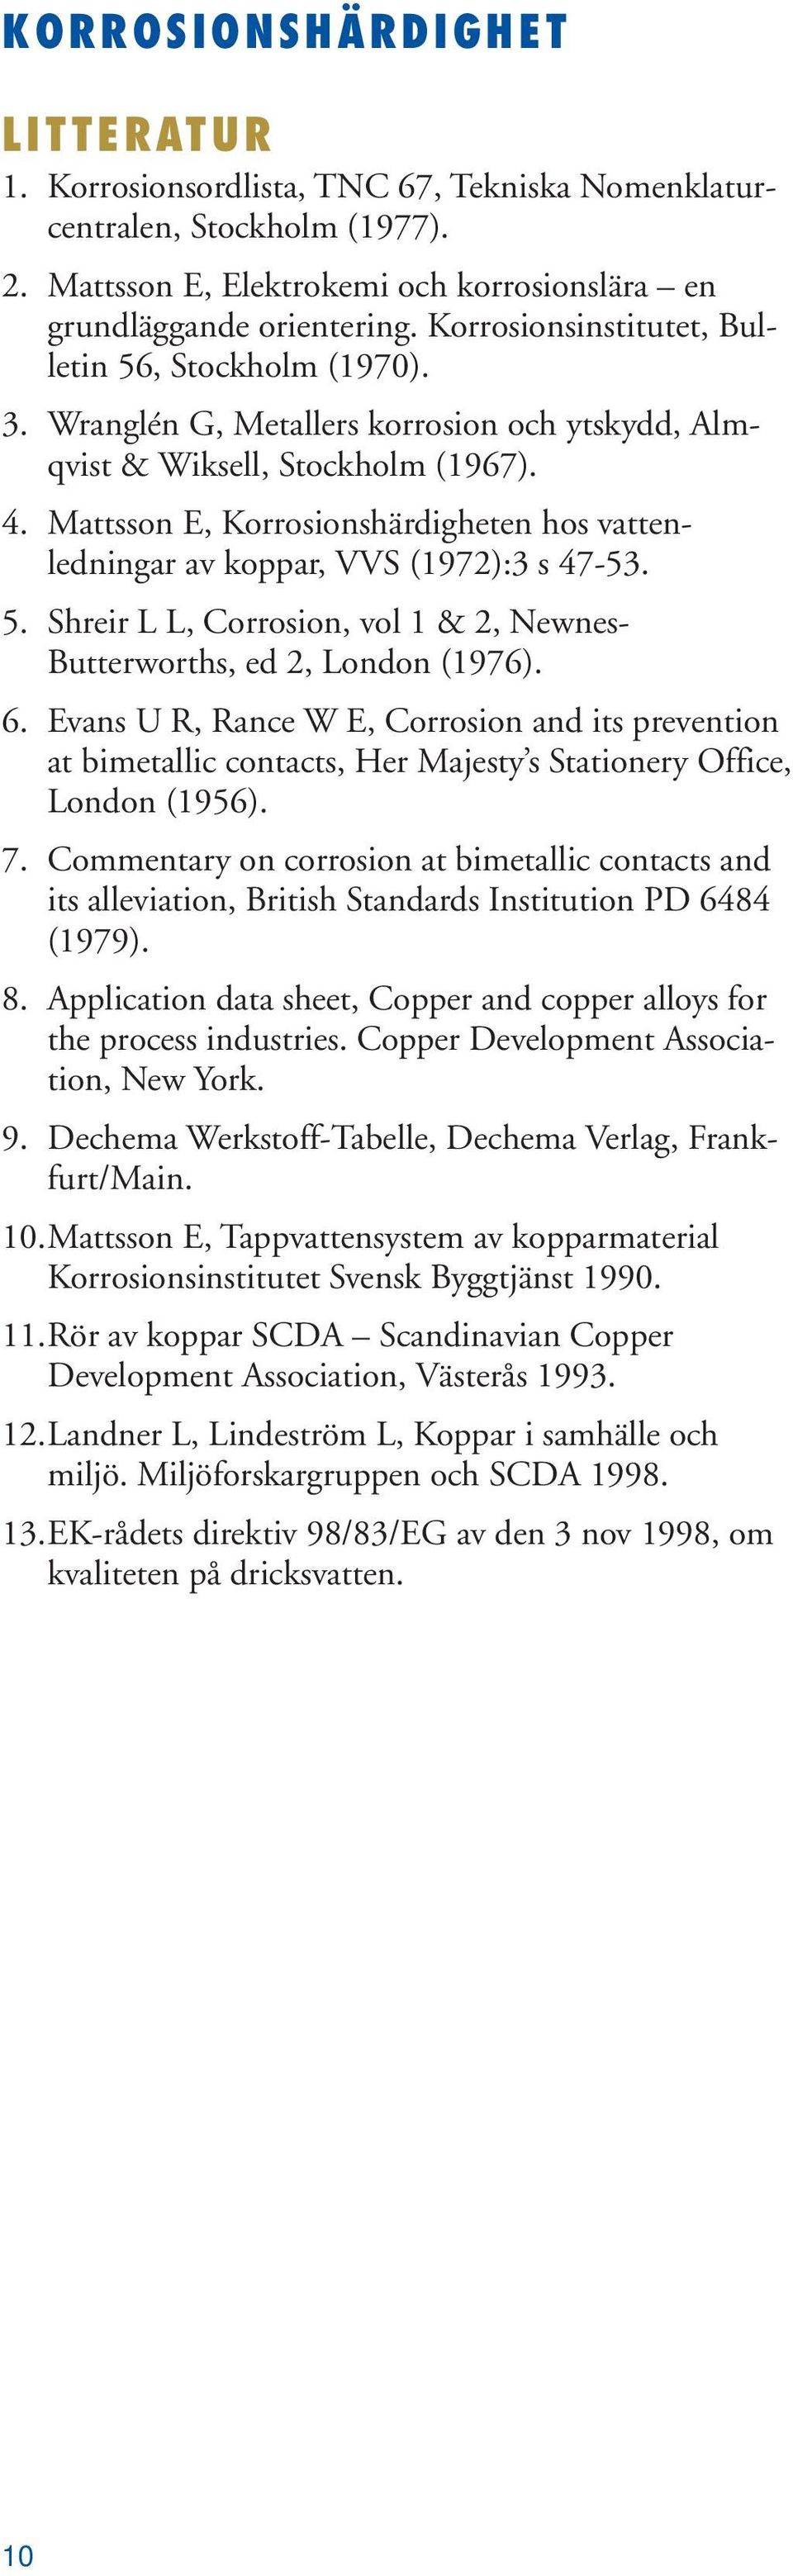 Mattsson E, Korrosionshärdigheten hos vattenledningar av koppar, VVS (1972):3 s 47-53. 5. Shreir L L, Corrosion, vol 1 & 2, Newnes- Butterworths, ed 2, London (1976). 6.